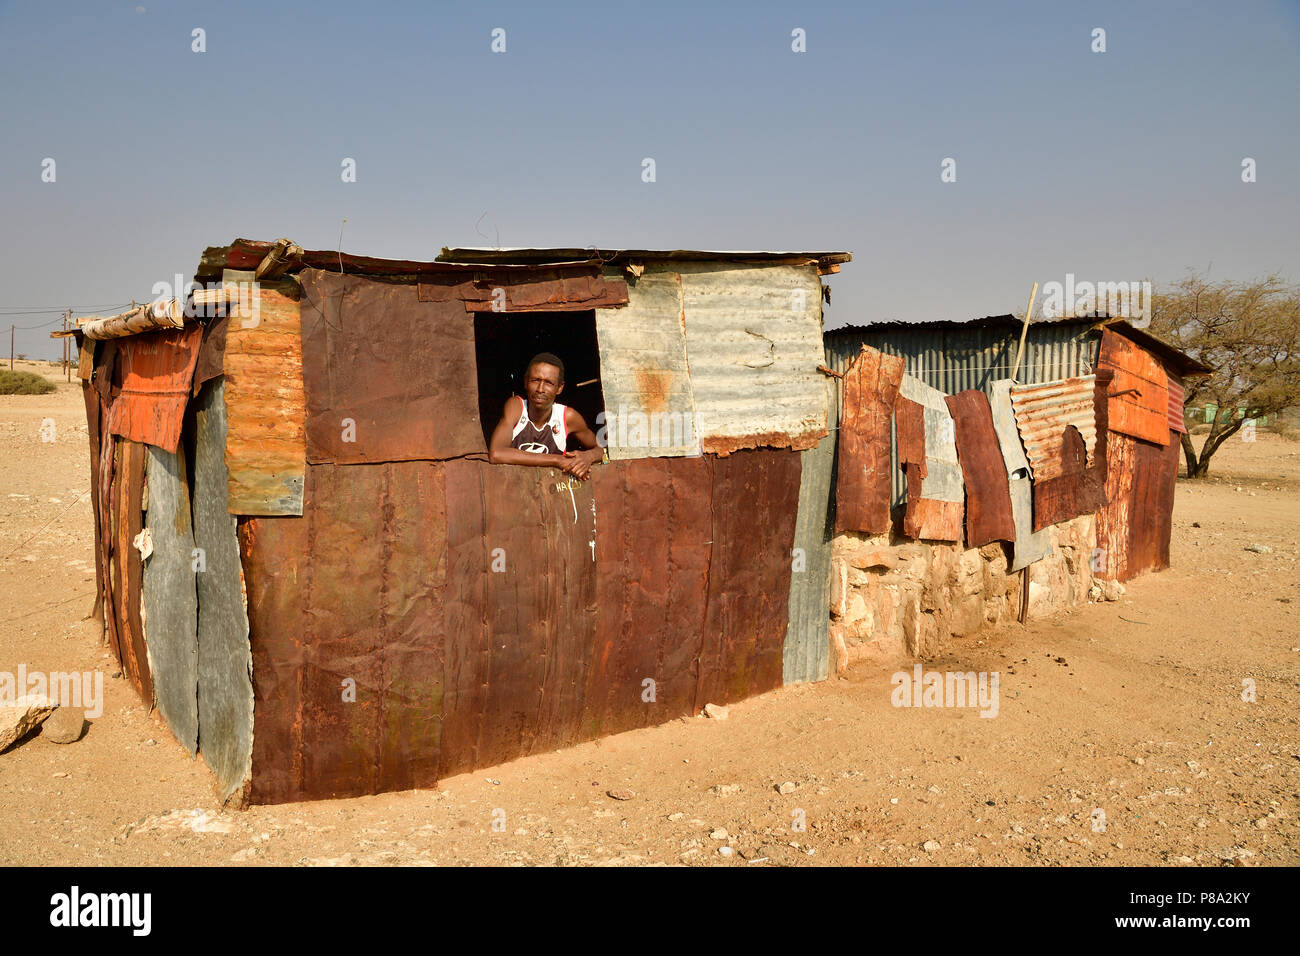 Hombre local mira por la ventana de su pobre choza de hierro corrugado, Spitzkoppe, región Erongo, Damaraland, Namibia Foto de stock